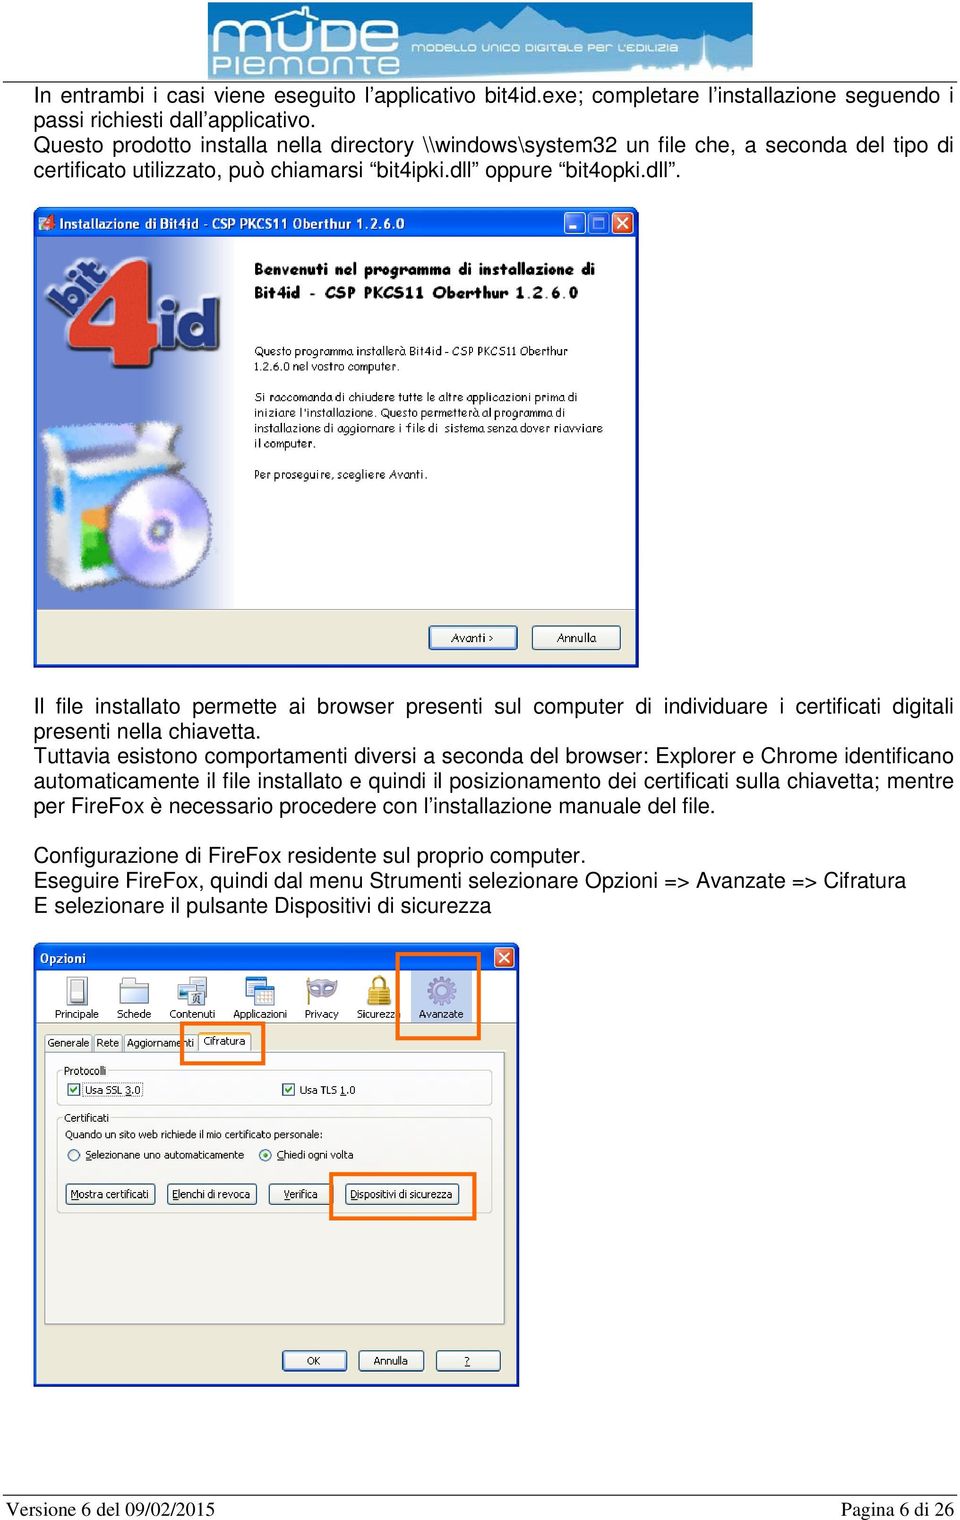 oppure bit4opki.dll. Il file installato permette ai browser presenti sul computer di individuare i certificati digitali presenti nella chiavetta.